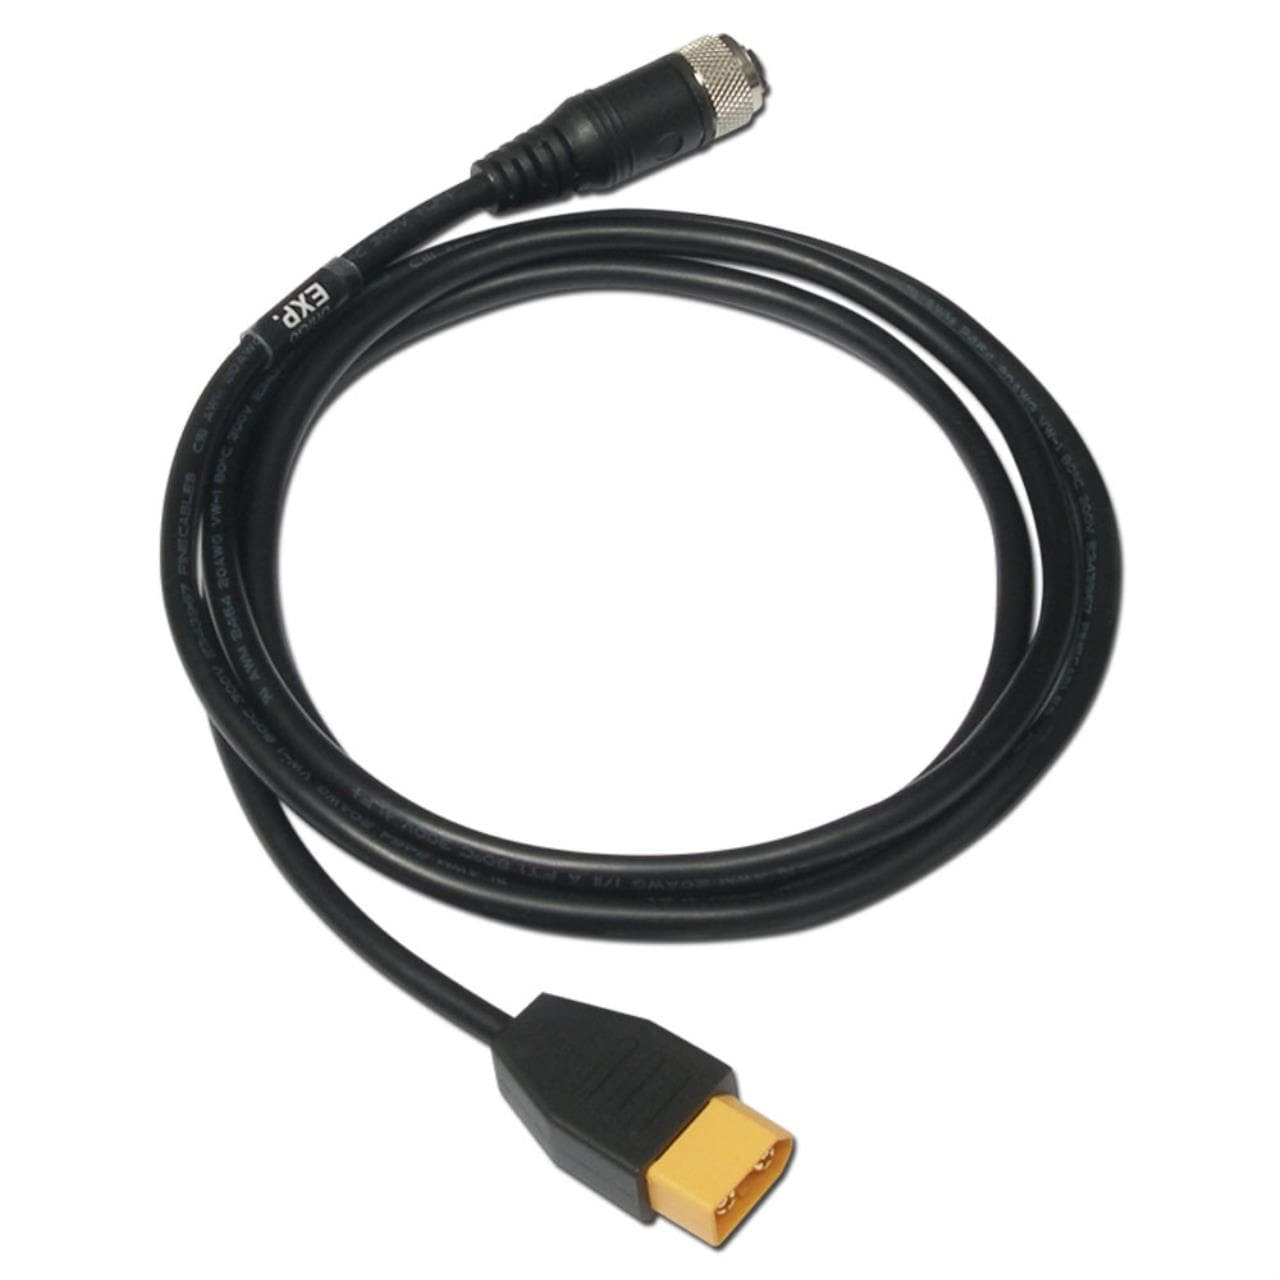 Power Cable for UniGo